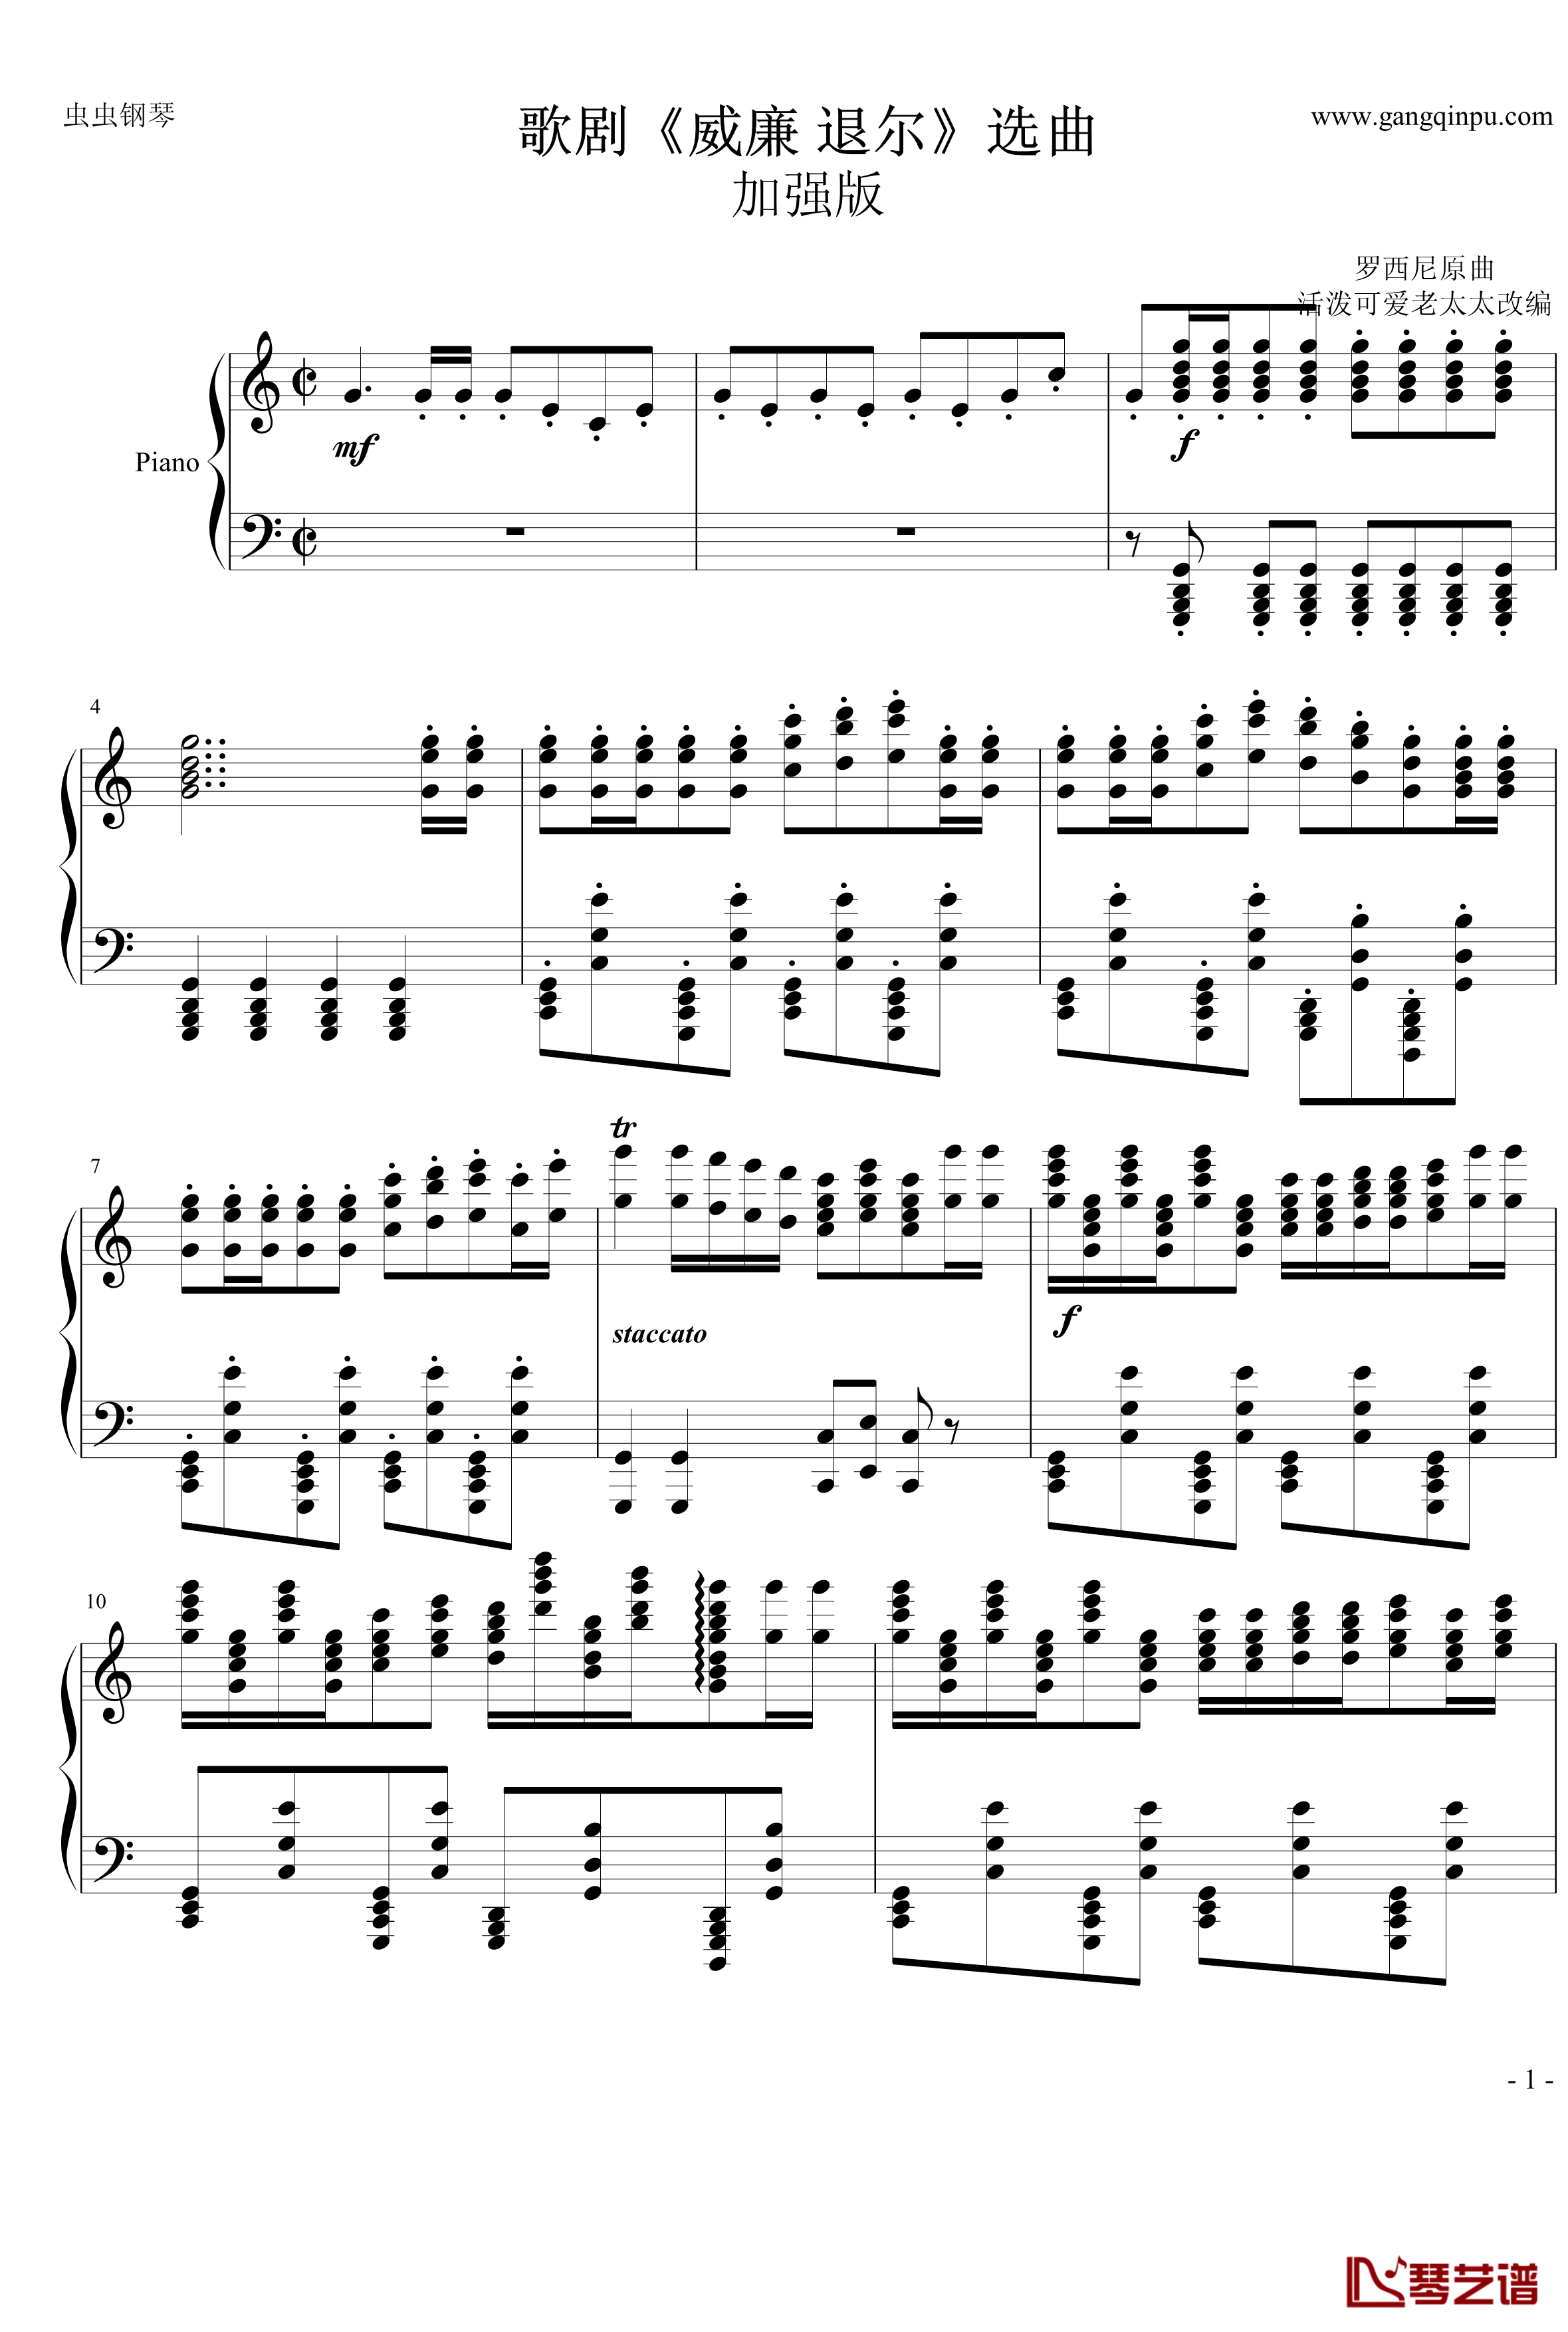 歌剧威廉退尔选曲钢琴谱-加强版-世界名曲1